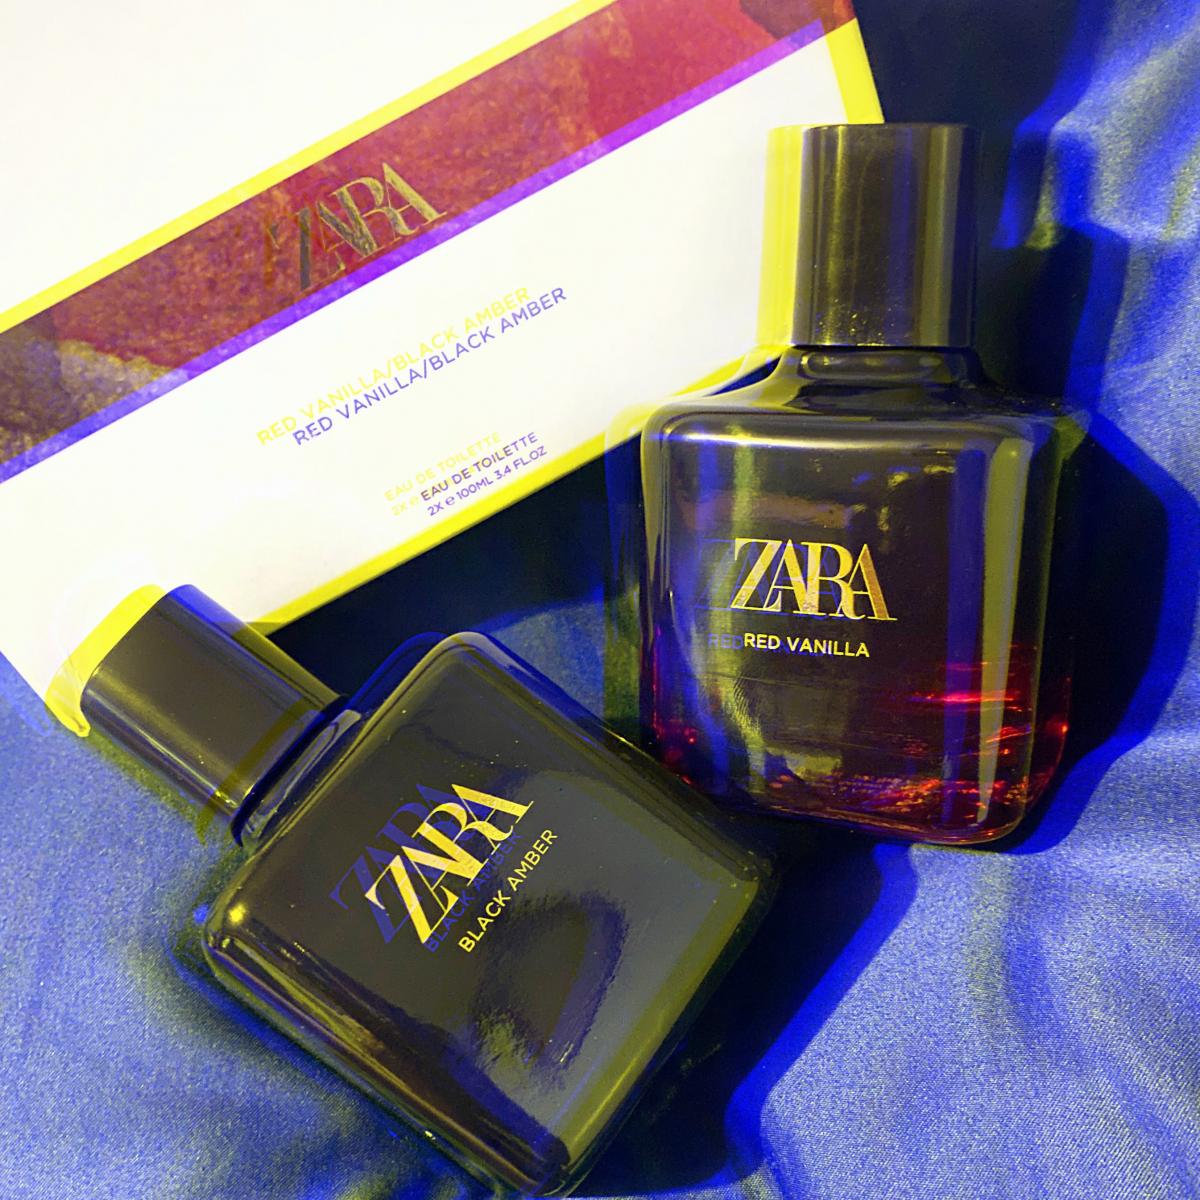 Red Vanilla Zara parfum - un parfum pour femme 2015